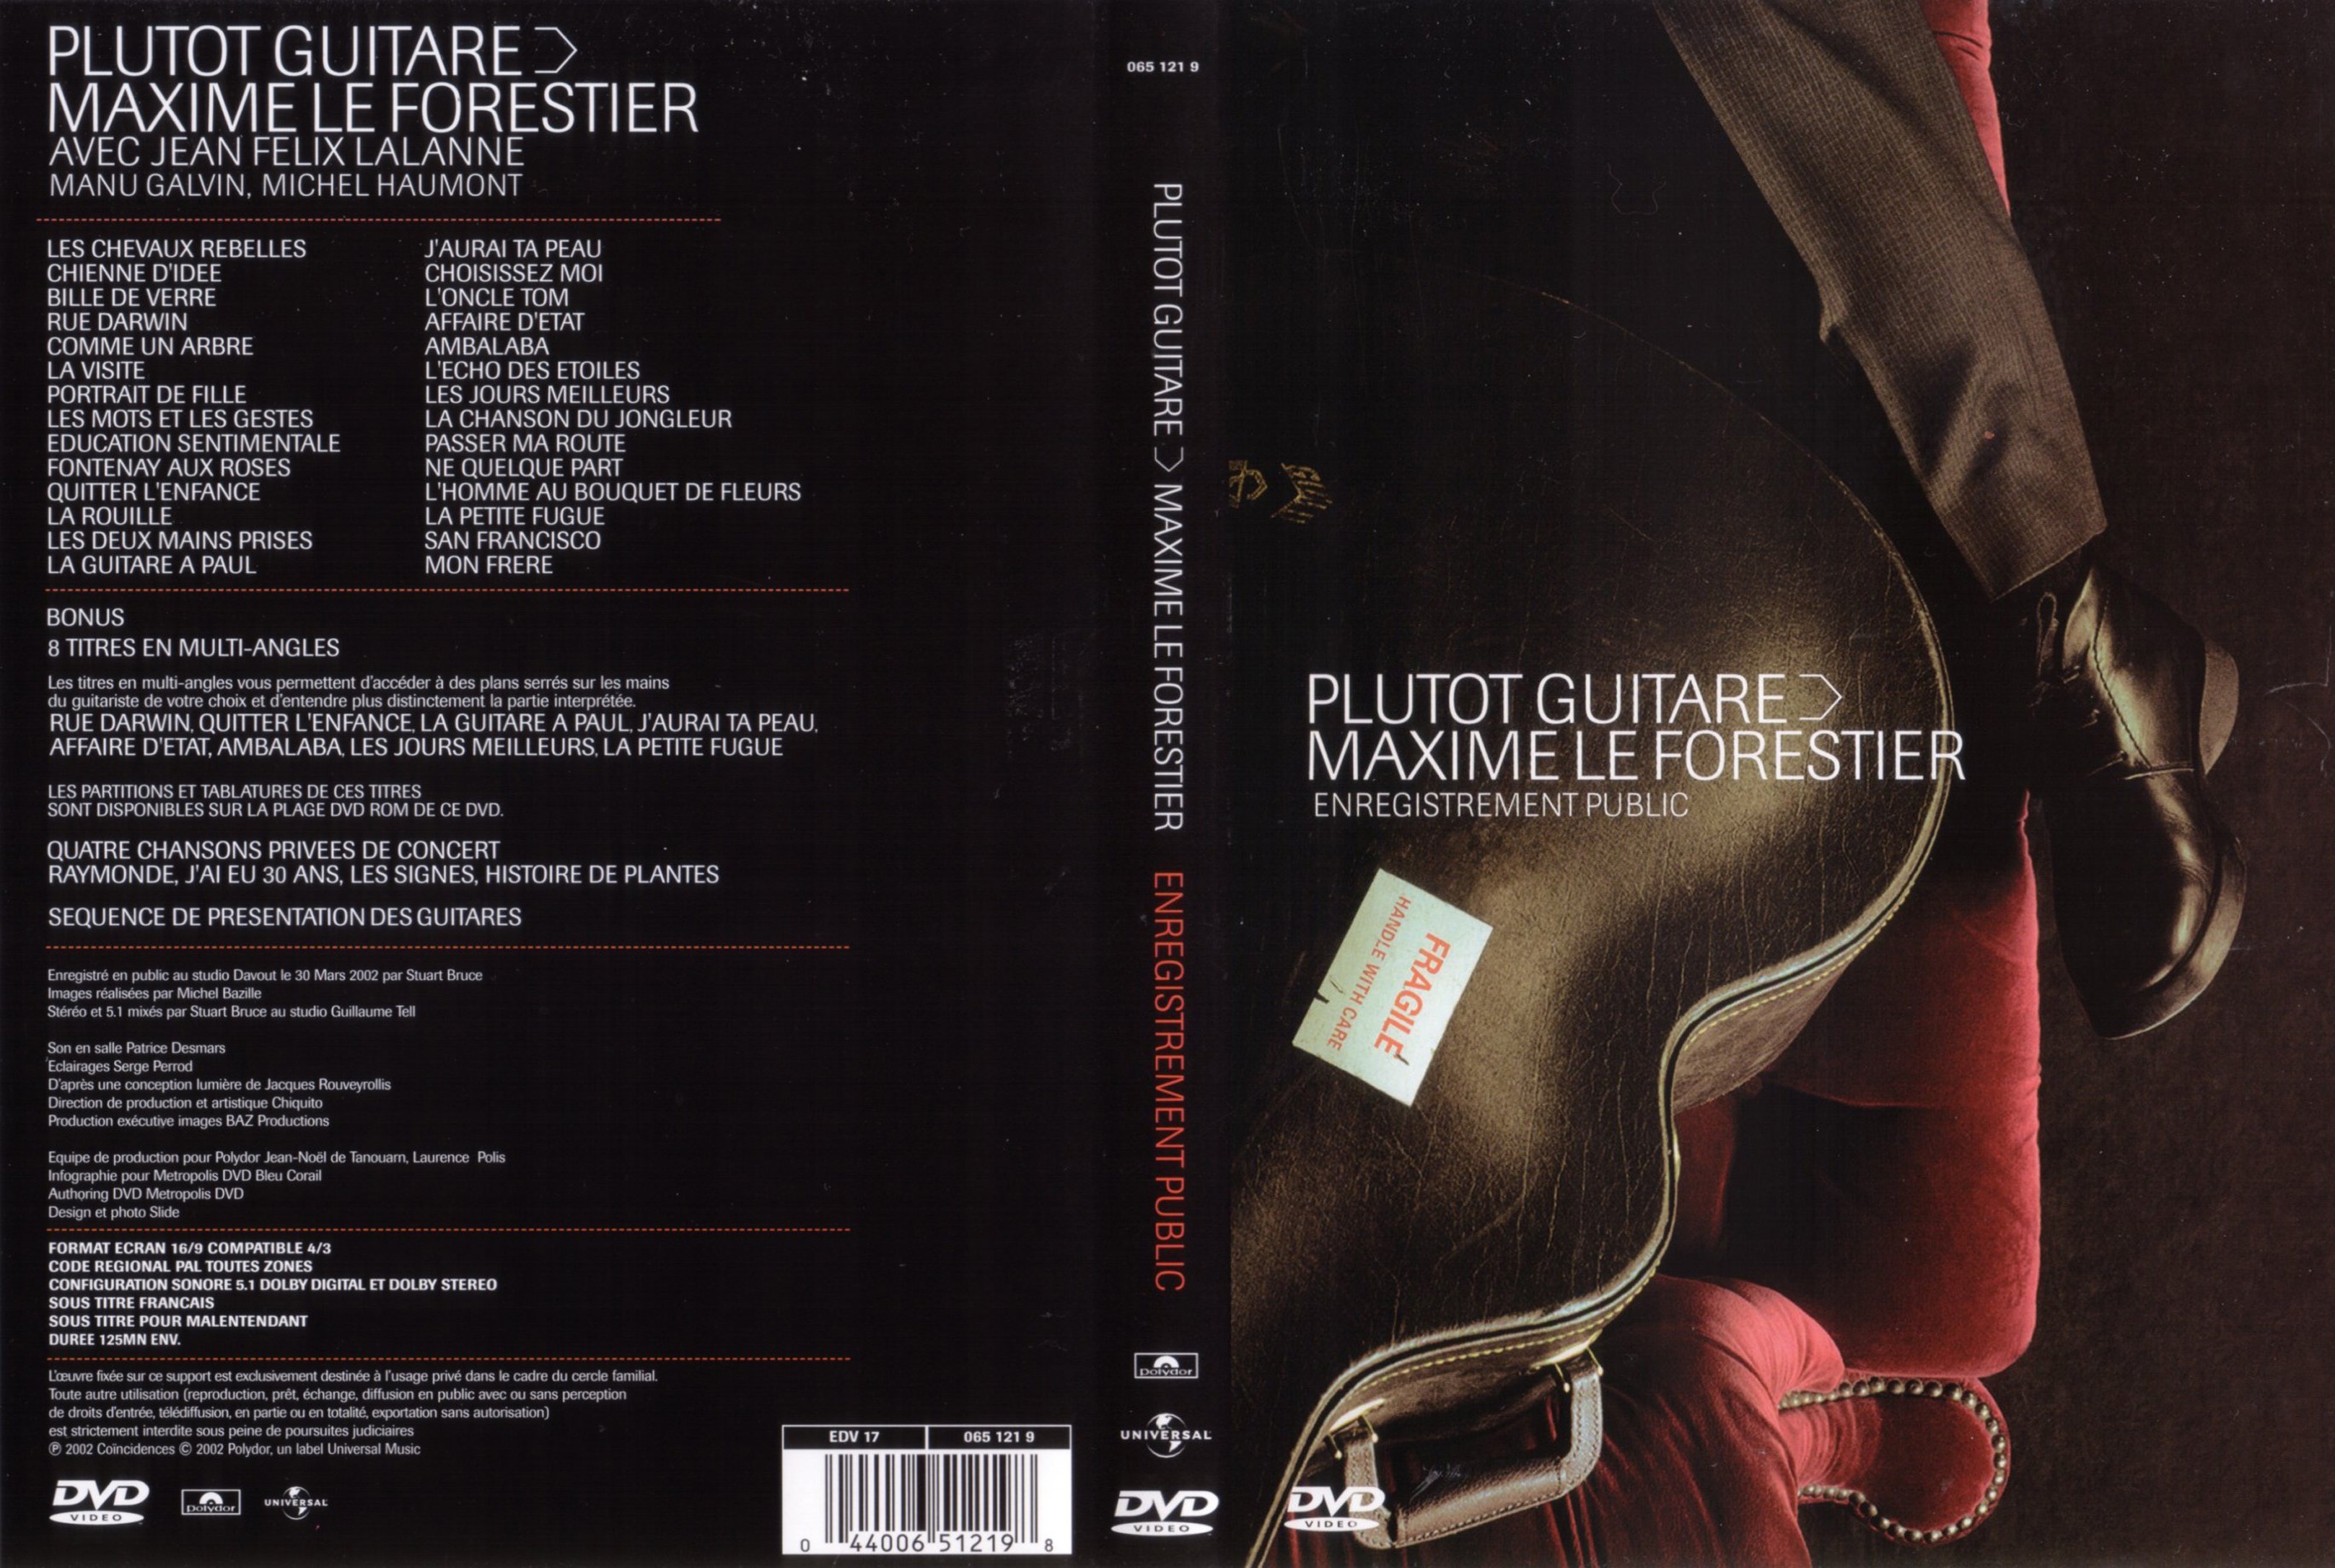 Jaquette DVD Maxime Le Forestier - Plutot guitare